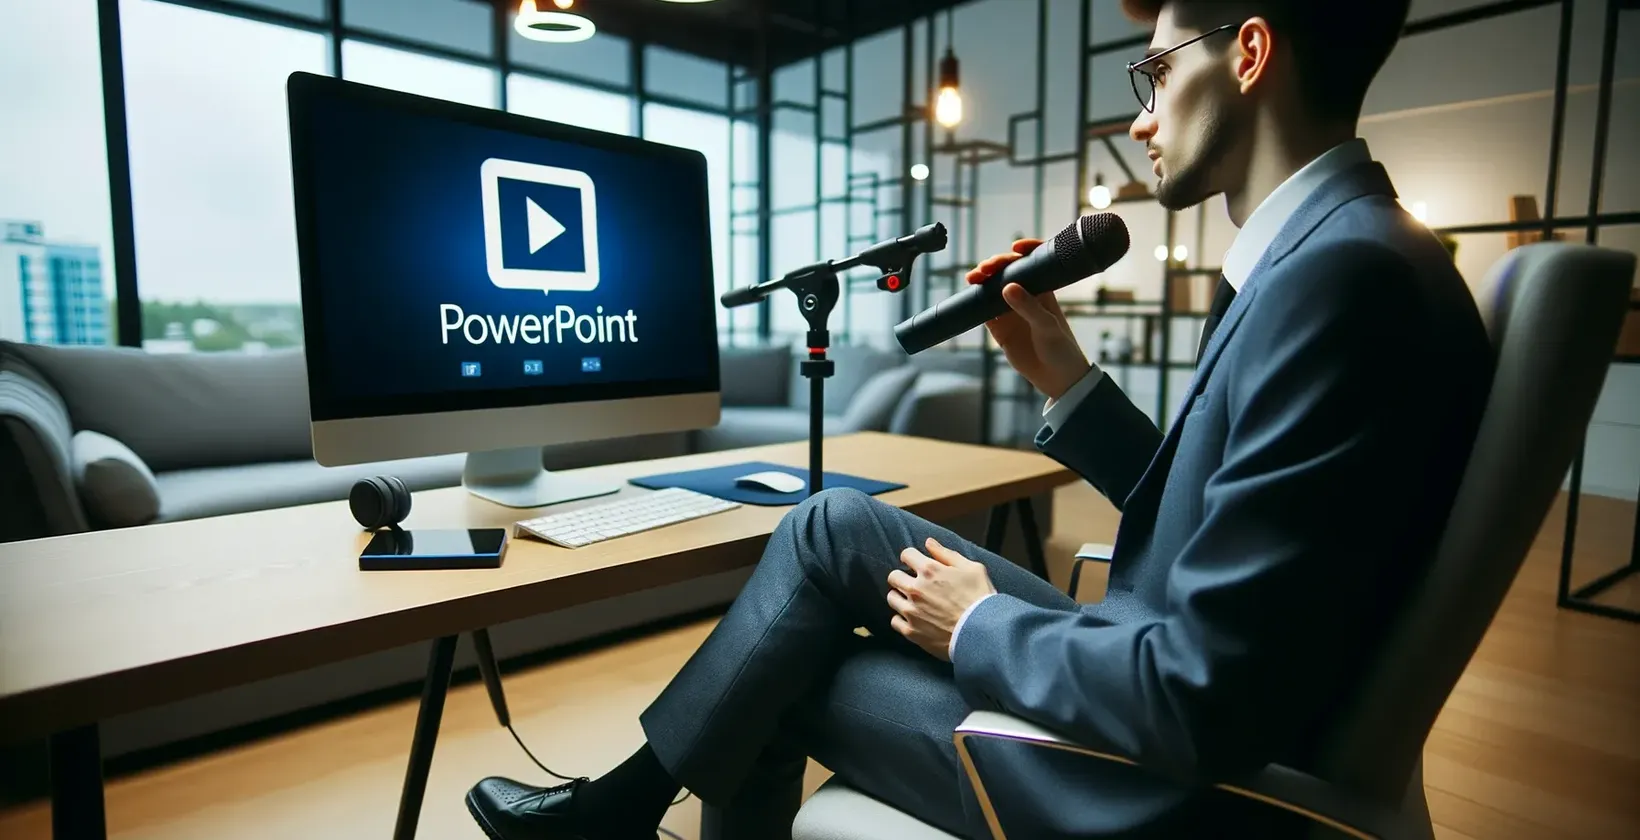 אדם במשרד עם מיקרופון מסתכל על צג המציג את הלוגו של PowerPoint.